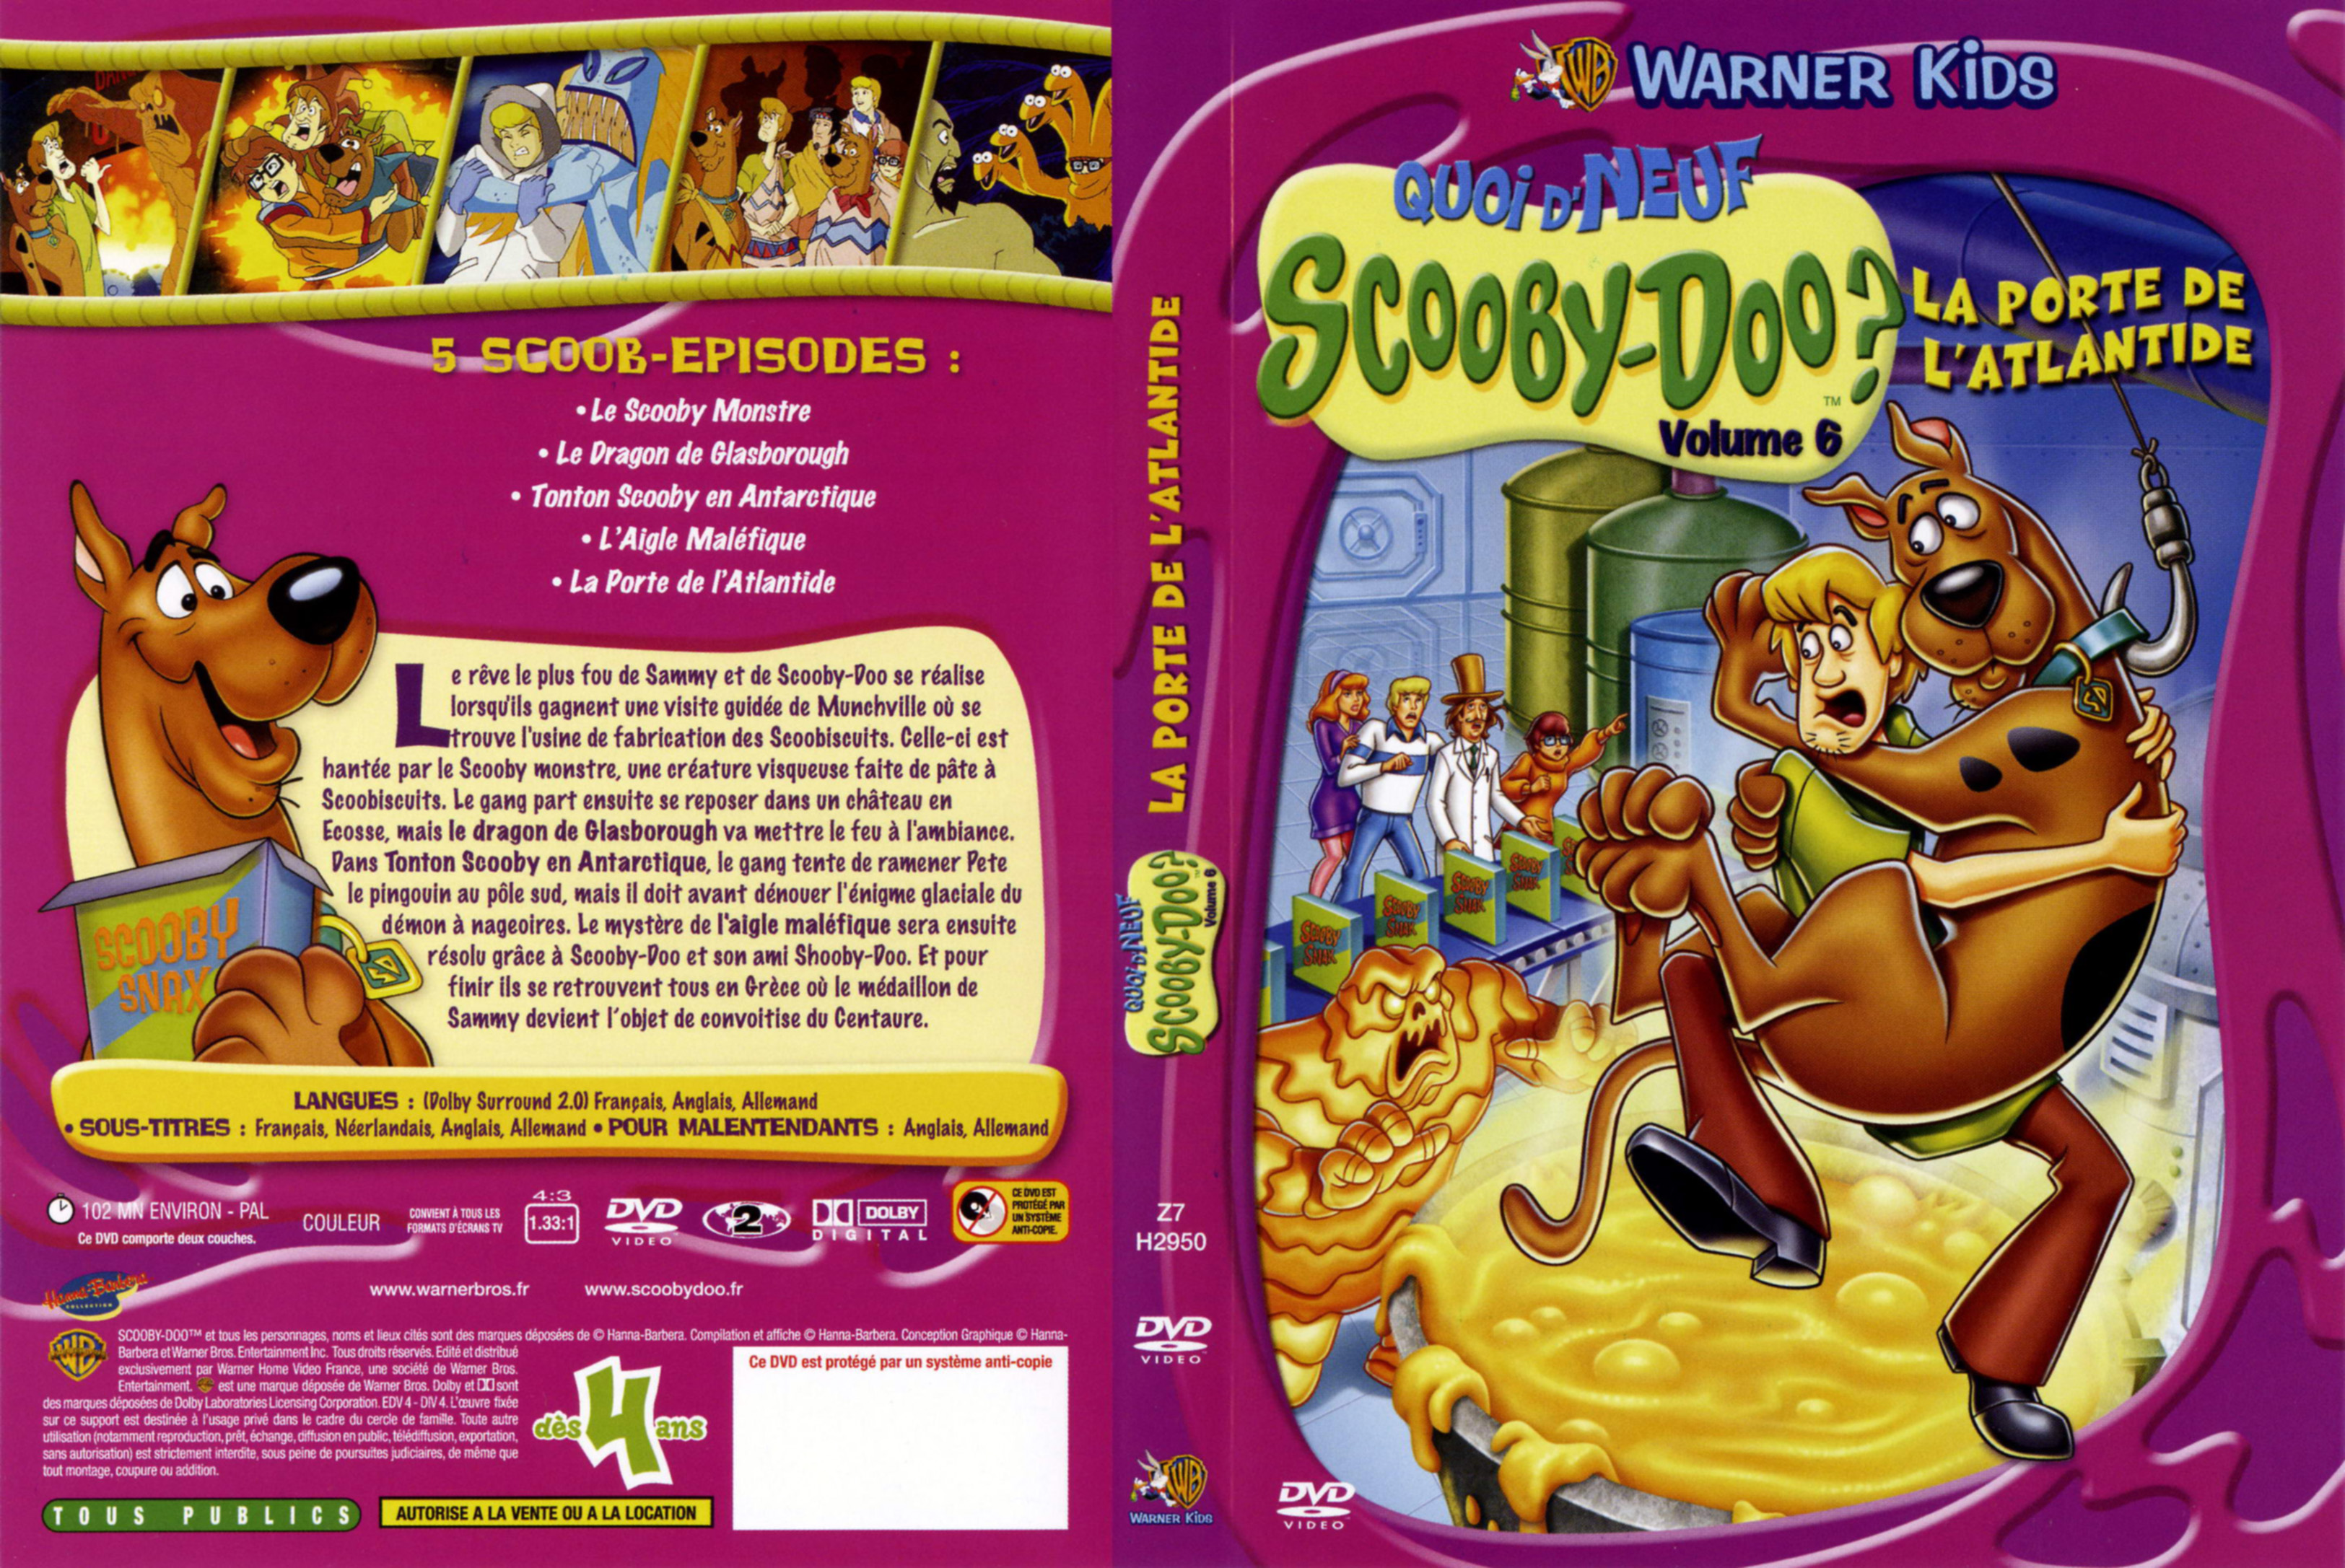 Jaquette DVD Quoi d neuf Scooby-Doo - La porte de l